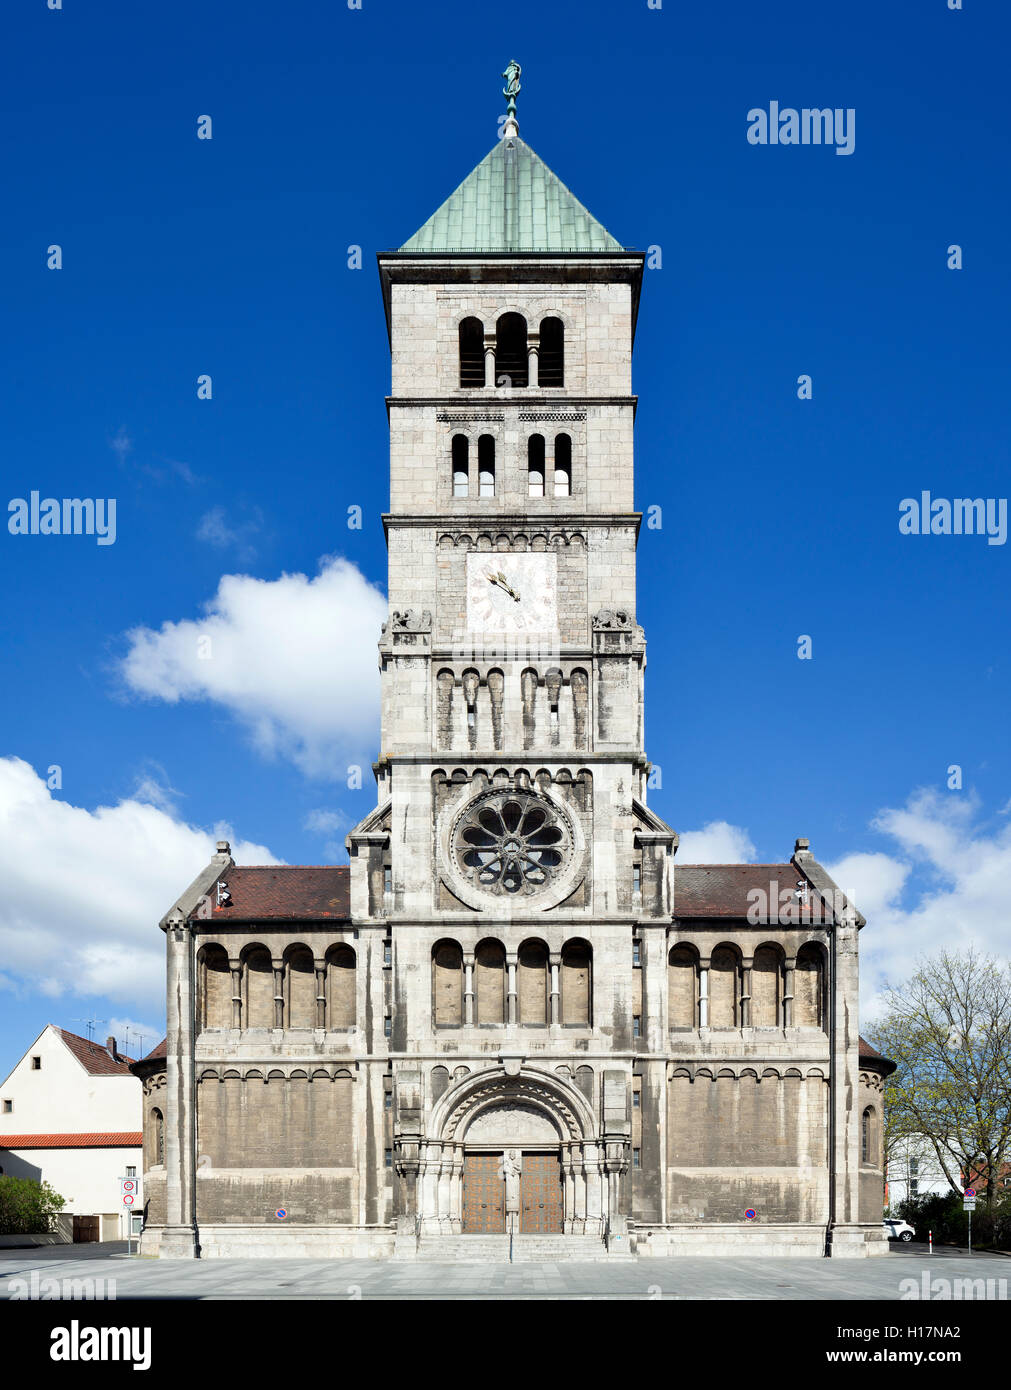 Katholische Pfarrkirche Heilig Geist in Schweinfurt, erbaut 1897-1902 nach Plänen von Anton Leipold. Der Fassadenturm wurde 1911 Foto Stock